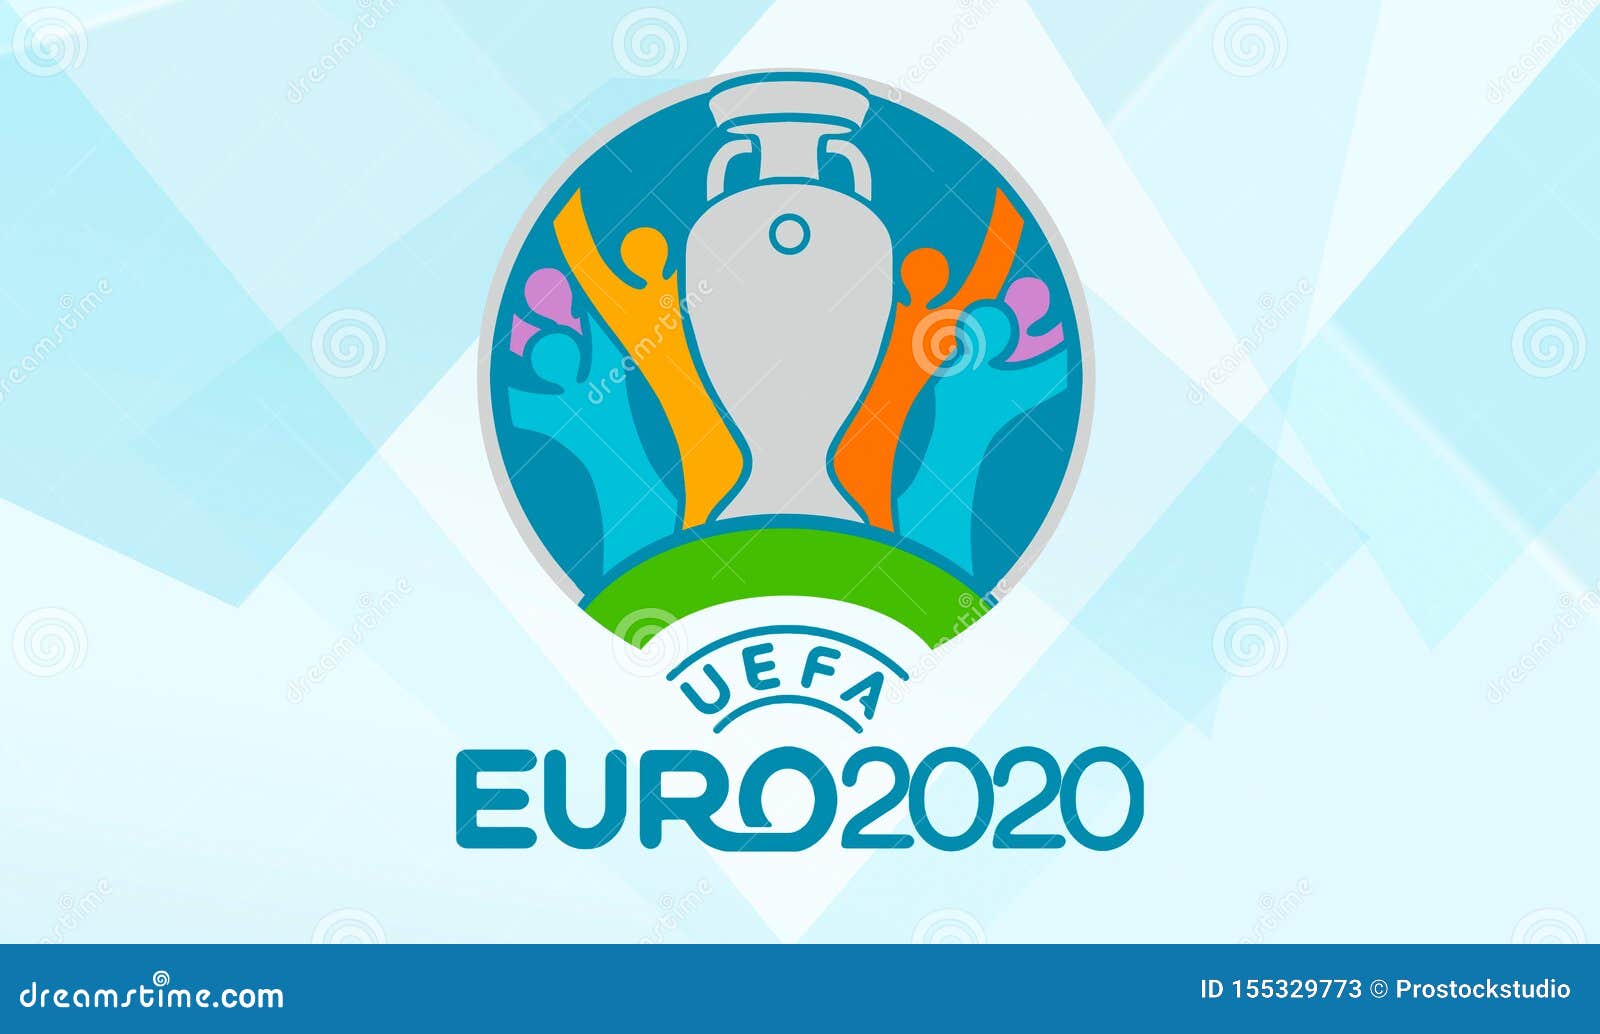 UEFA EURO broadcasts